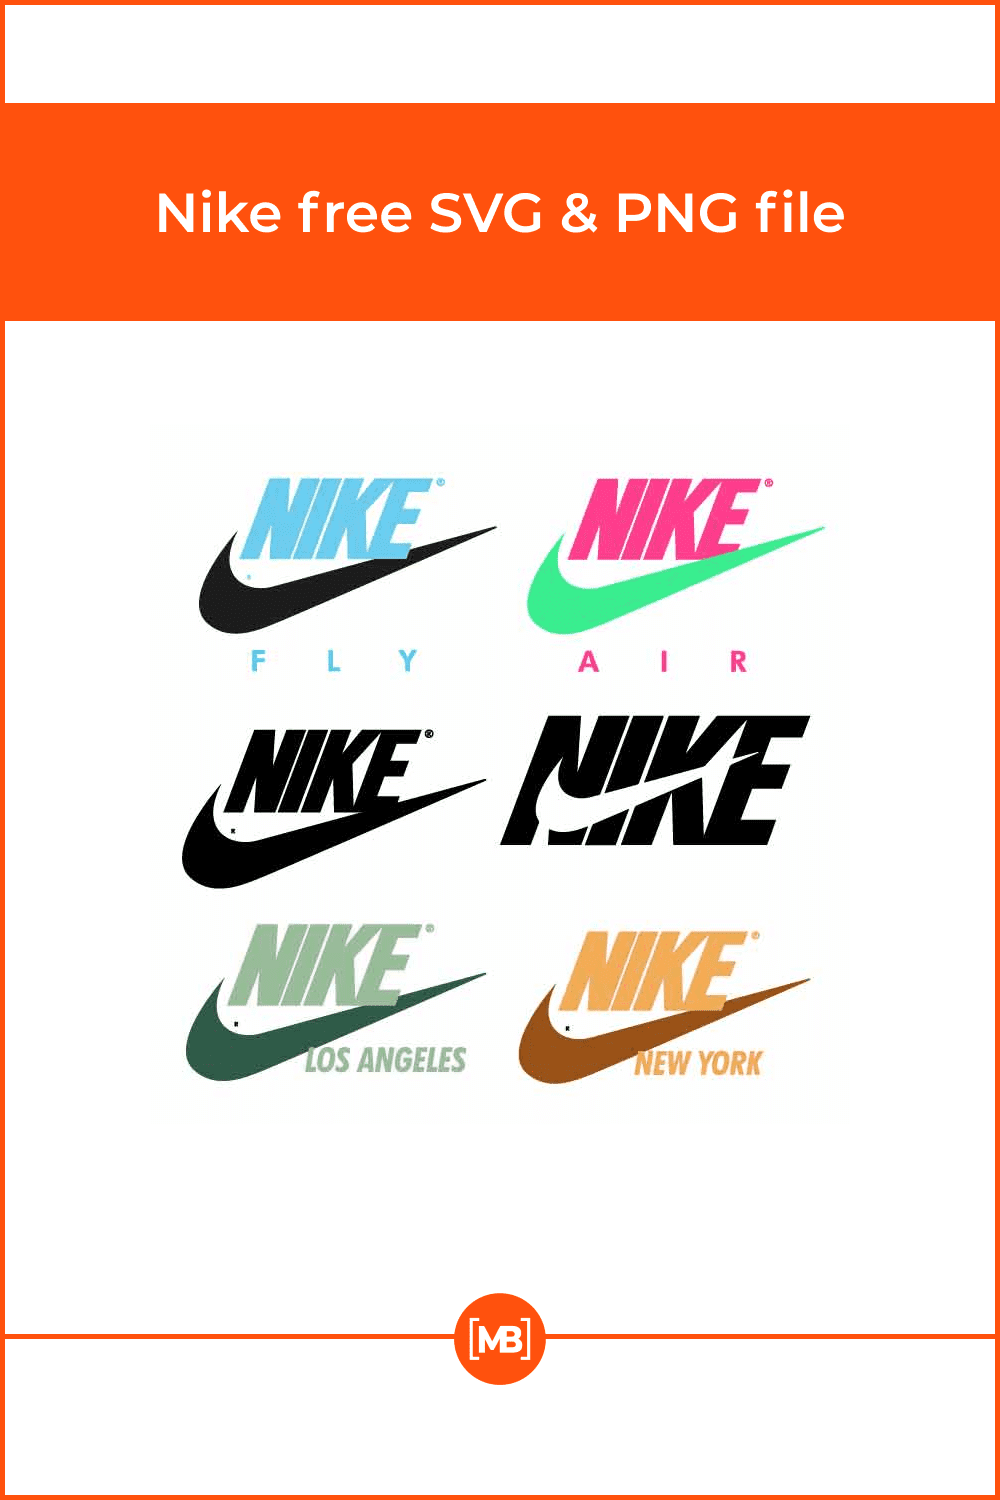 Nike free SVG & PNG file.